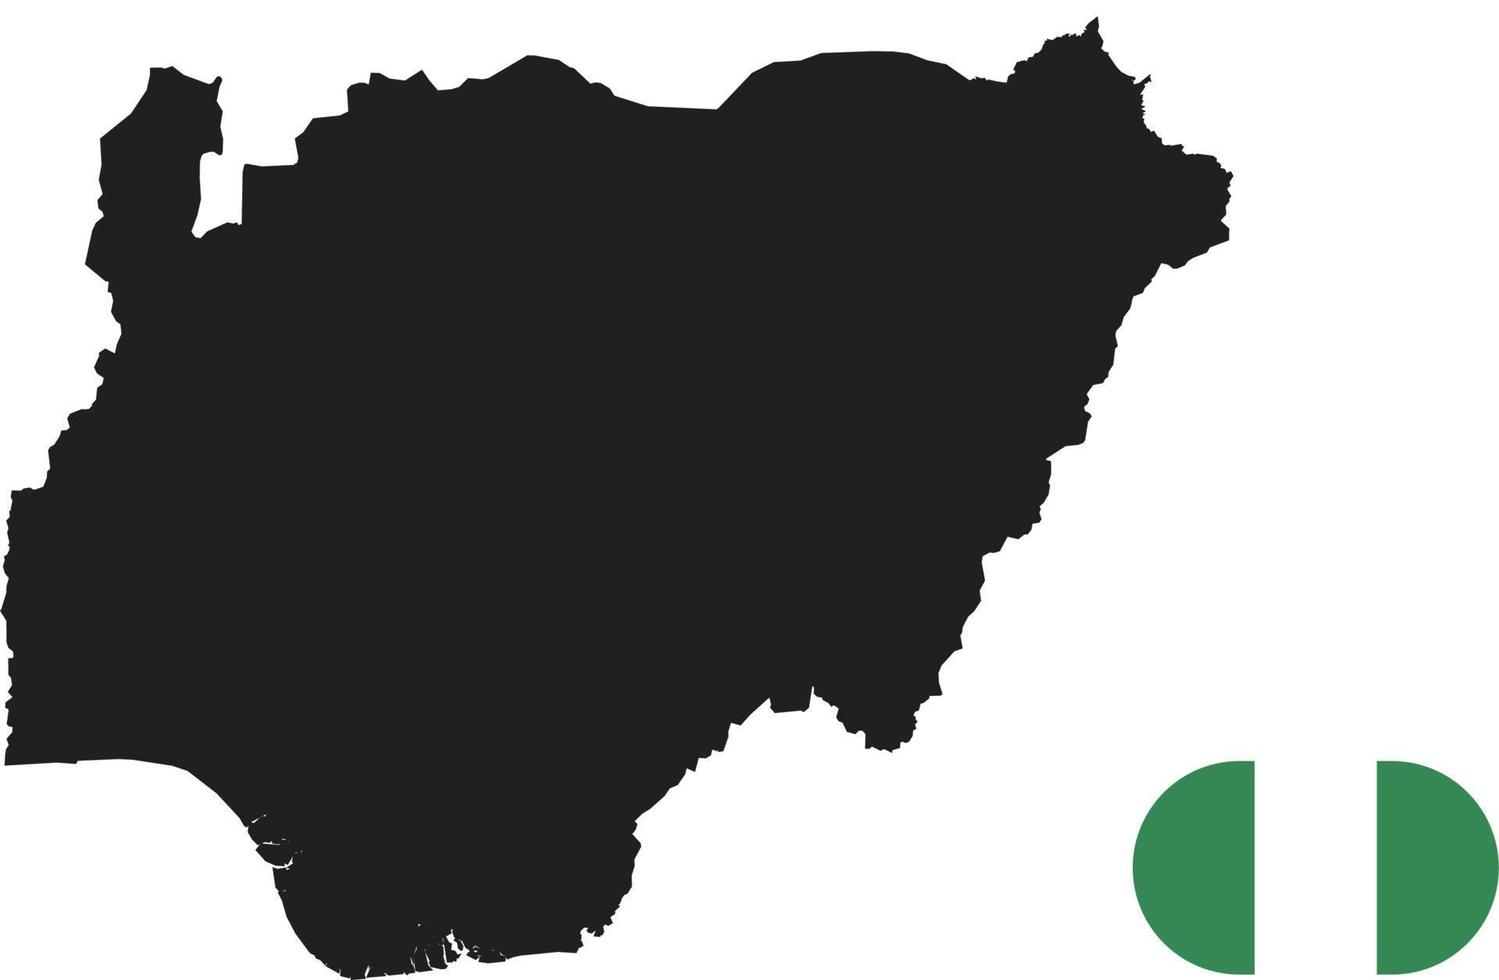 mapa e bandeira da Nigéria vetor